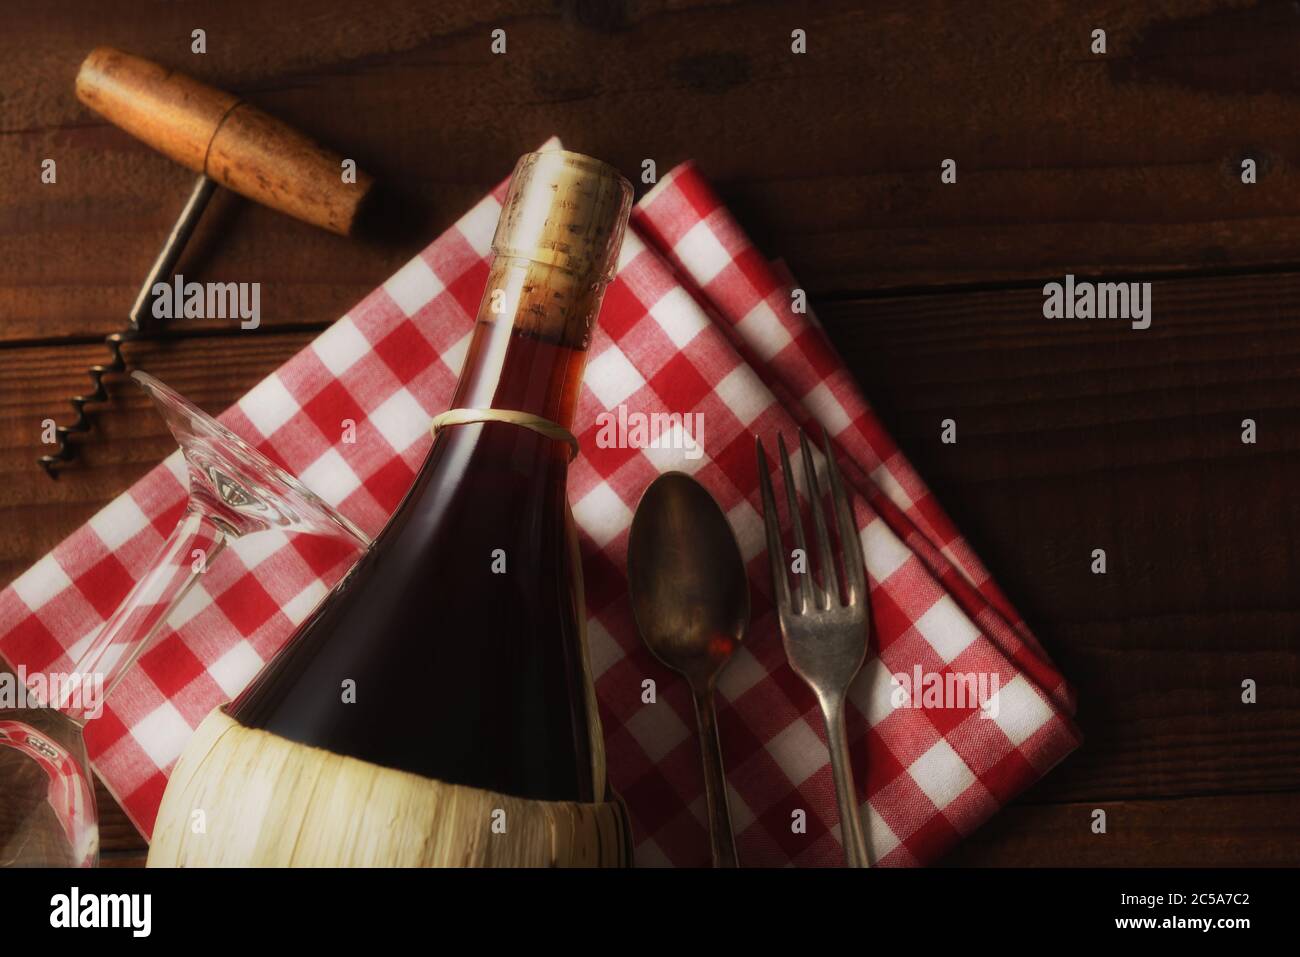 Flat Lay Wine STILL Life : un panier de vin Chianti sur une serviette à carreaux rouge et blanc avec tire-bouchon, fourchette et cuillère avec lumière d'ambiance chaude. Banque D'Images